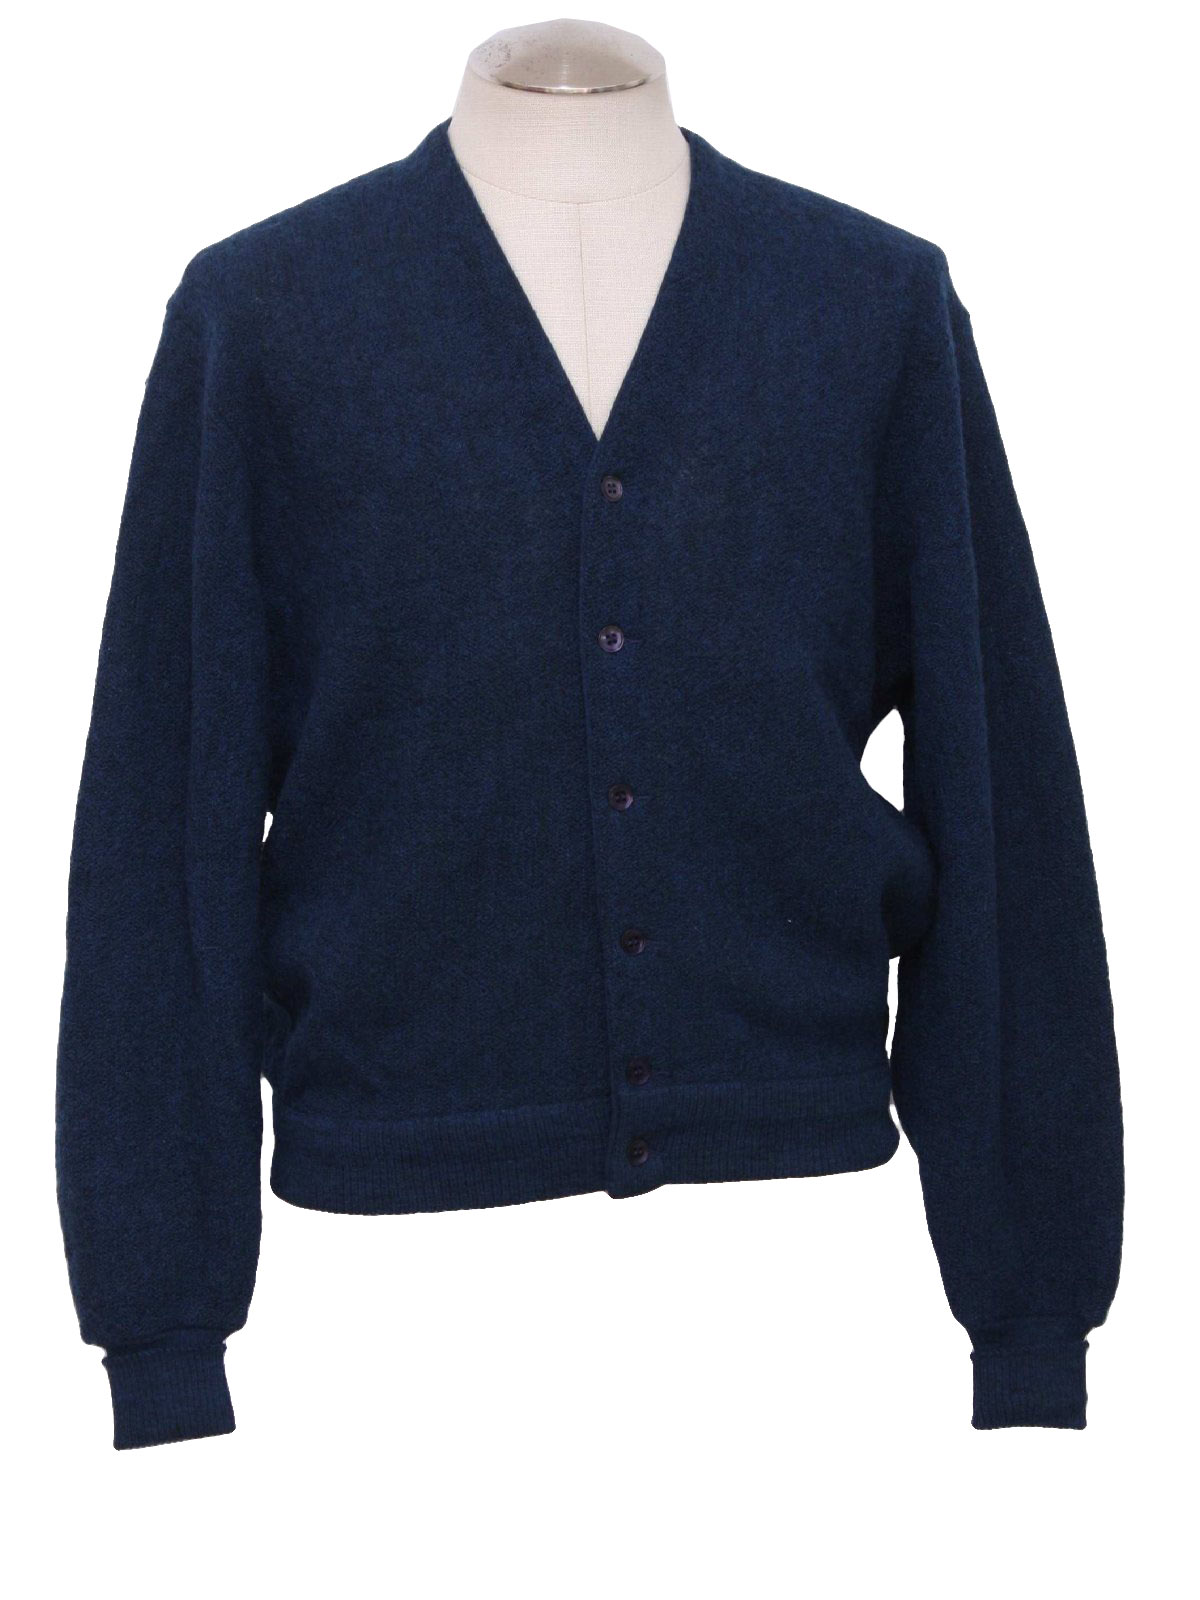 Retro 1960's Sweater (Jantzen Collection Dave Marr) : 60s -Jantzen ...